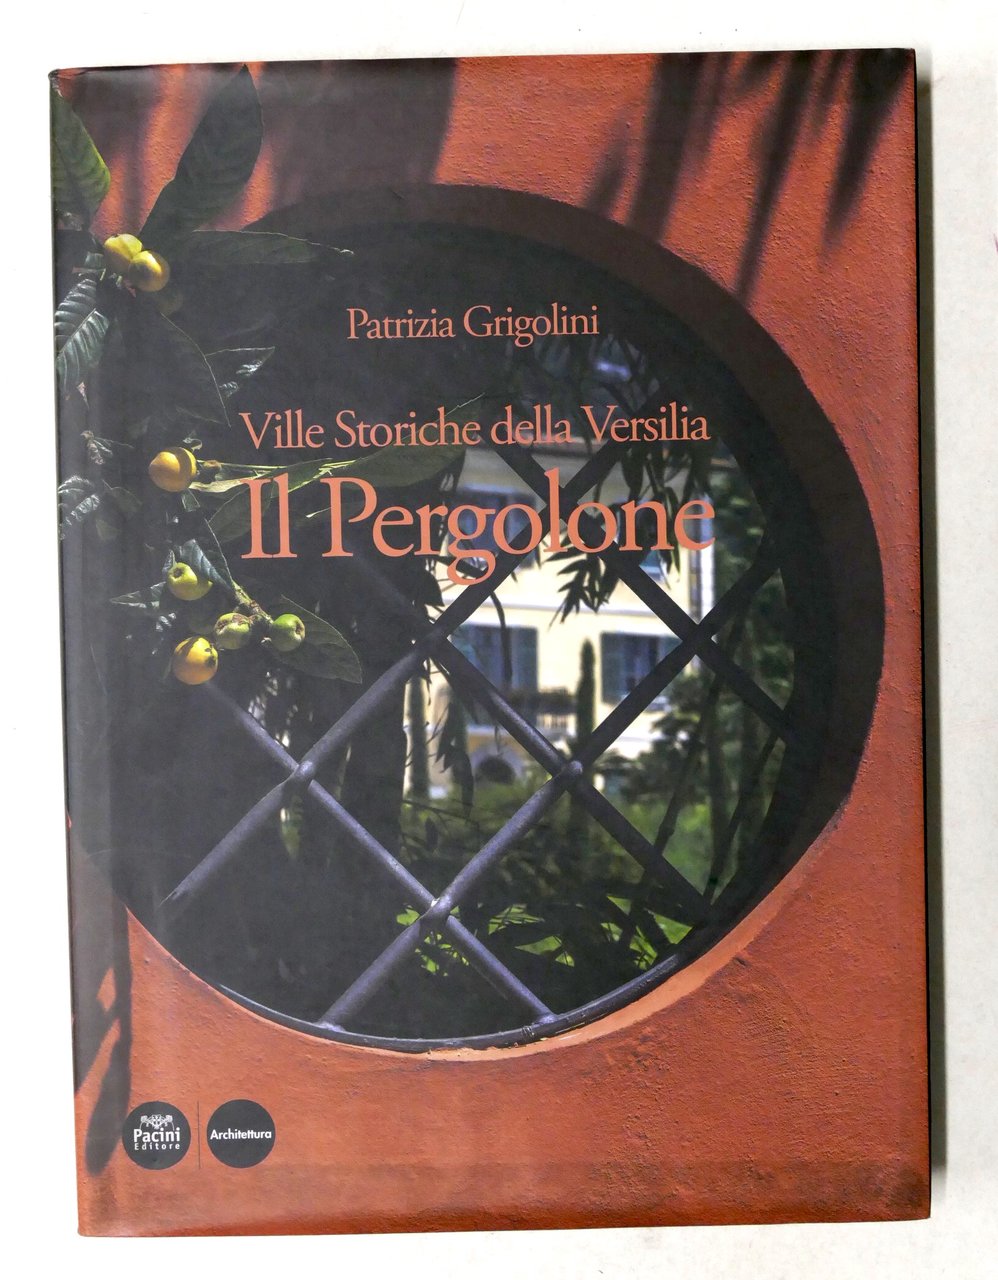 Patrizia Grigolini - Ville storiche della Versilia: Il Pergolone - …